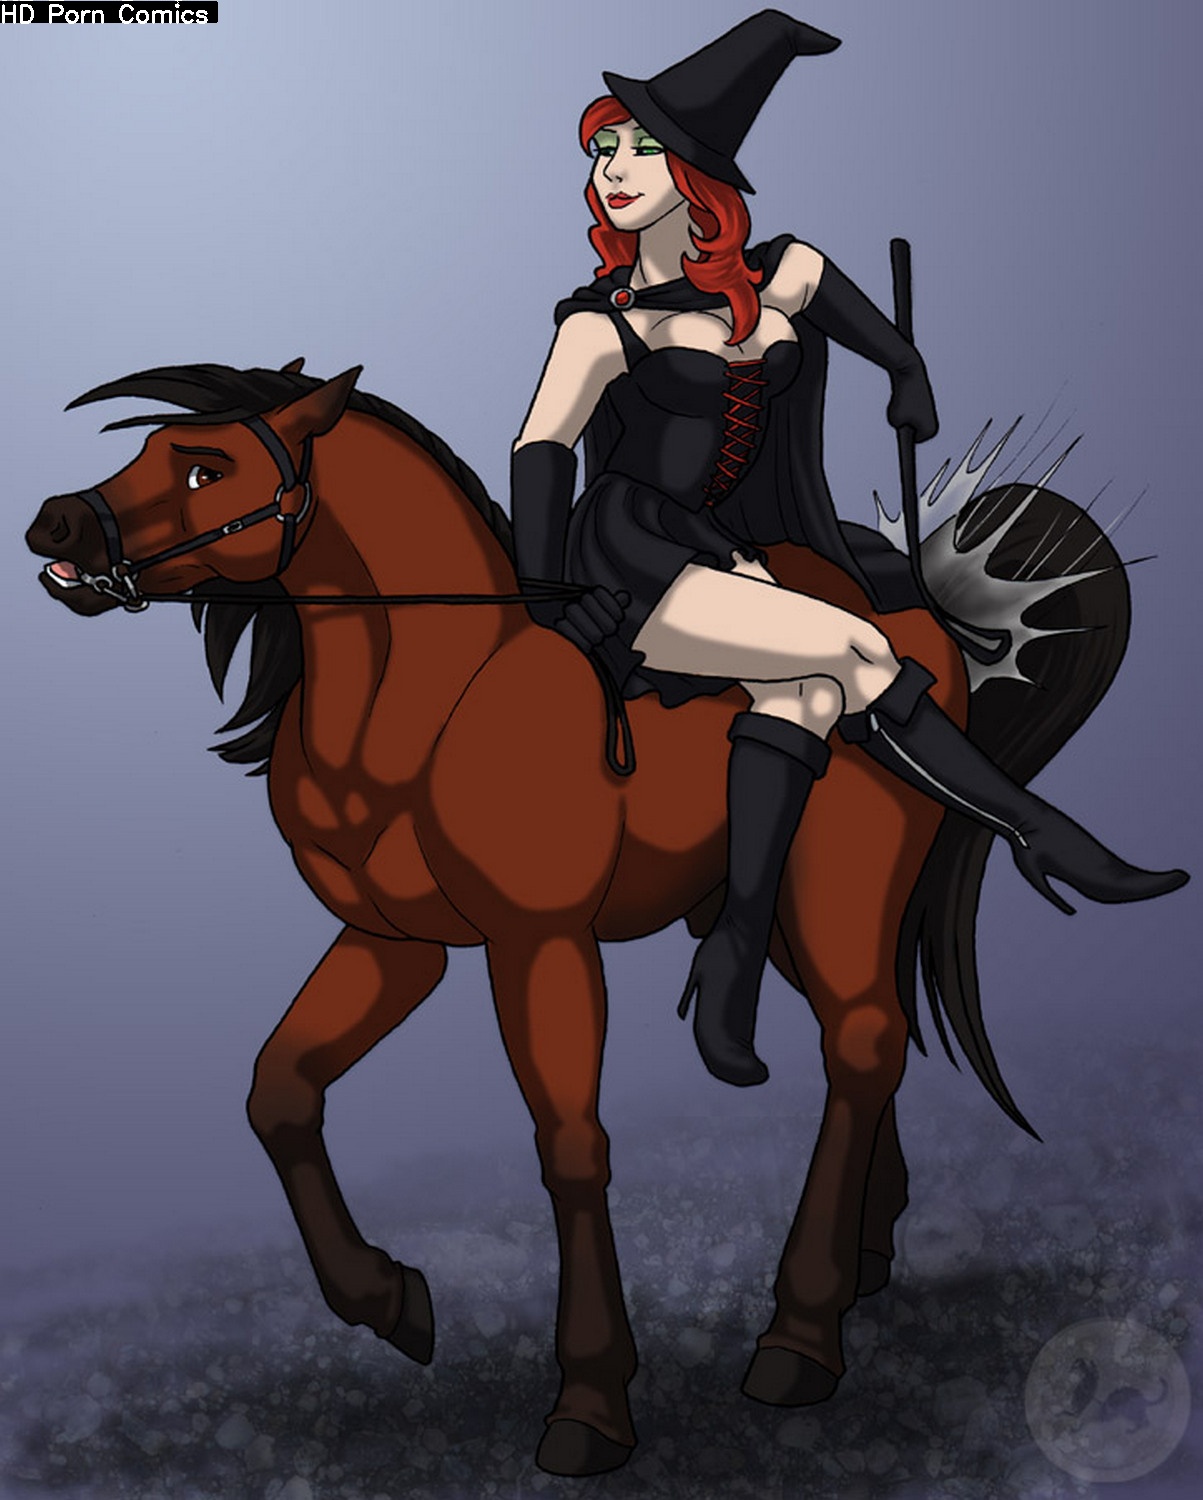 Horse Rider Porn - Horse And Rider comic porn - HD Porn Comics